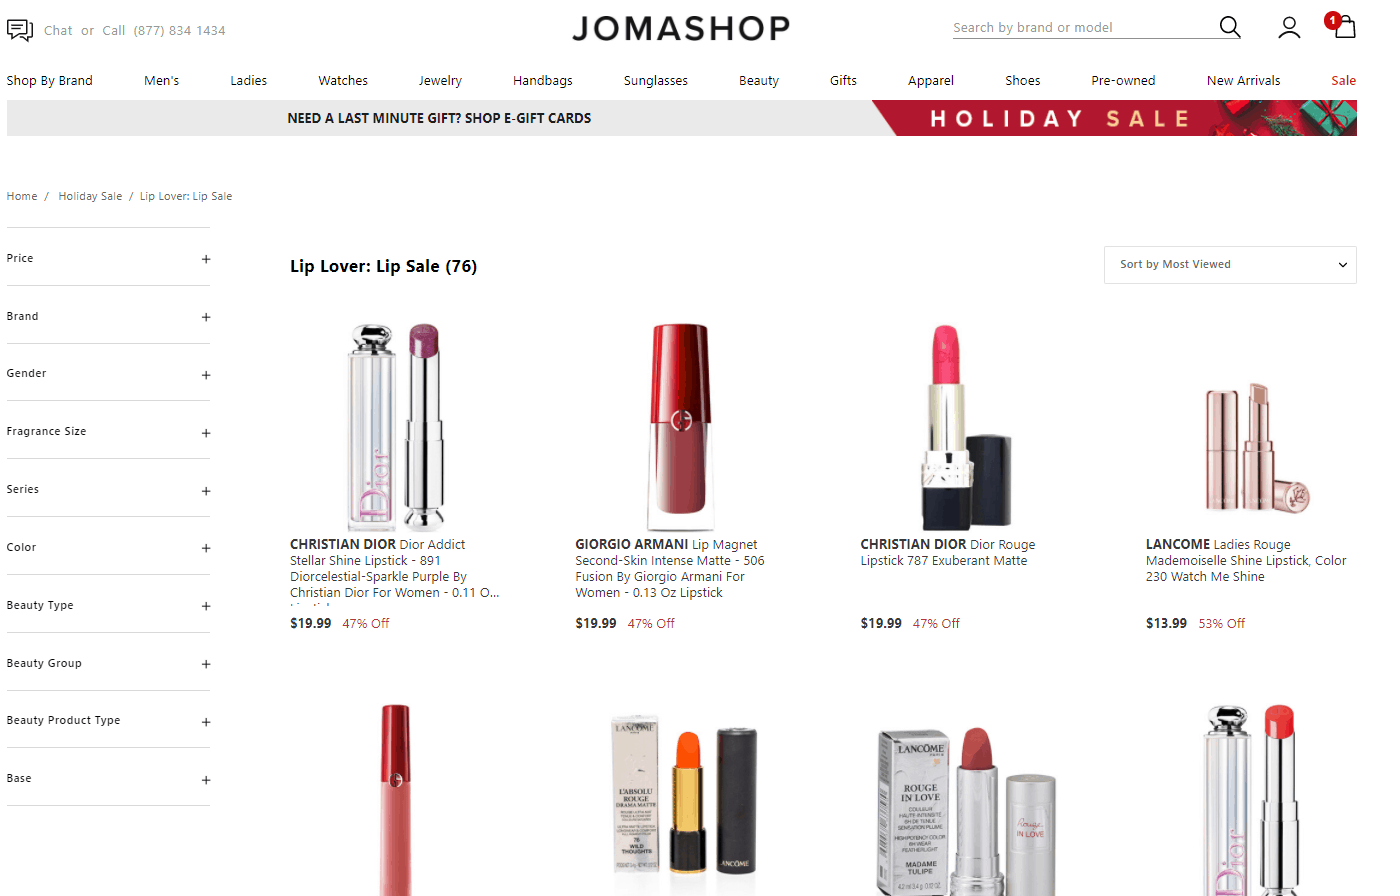 Jomashop折扣代碼2020-jomashop現有精選美妝護膚低至5折清倉促銷超多品牌參加